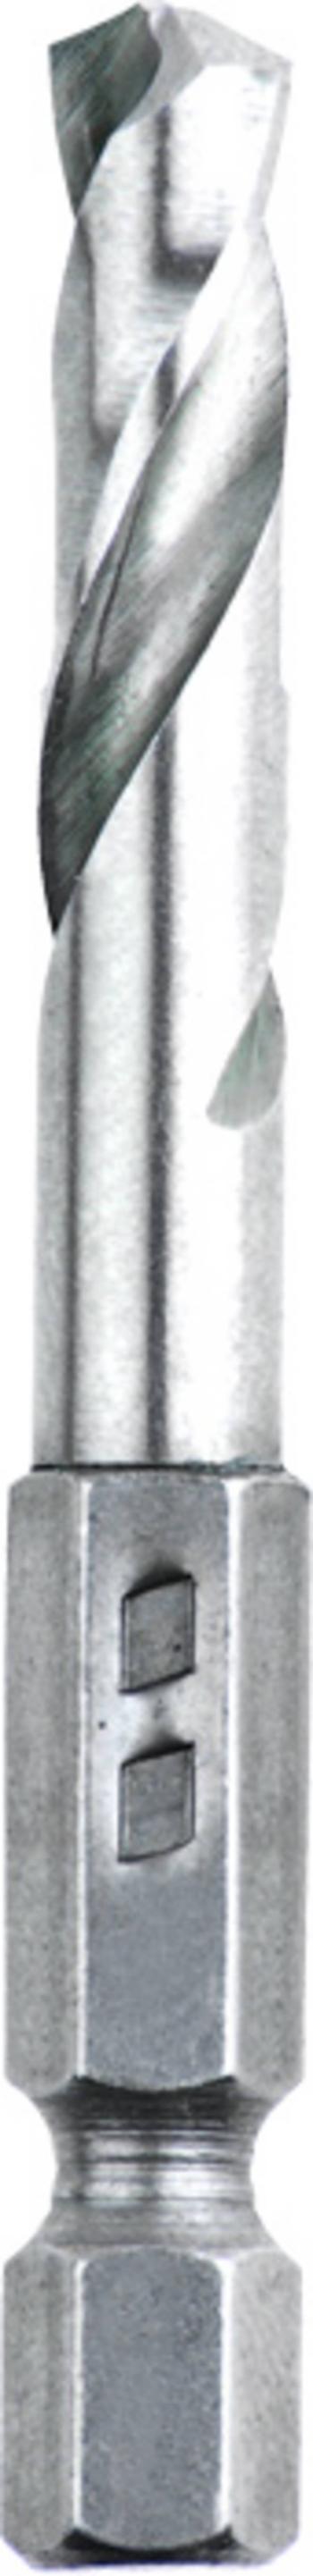 kwb 421104  kovový špirálový vrták 1 ks      1 ks